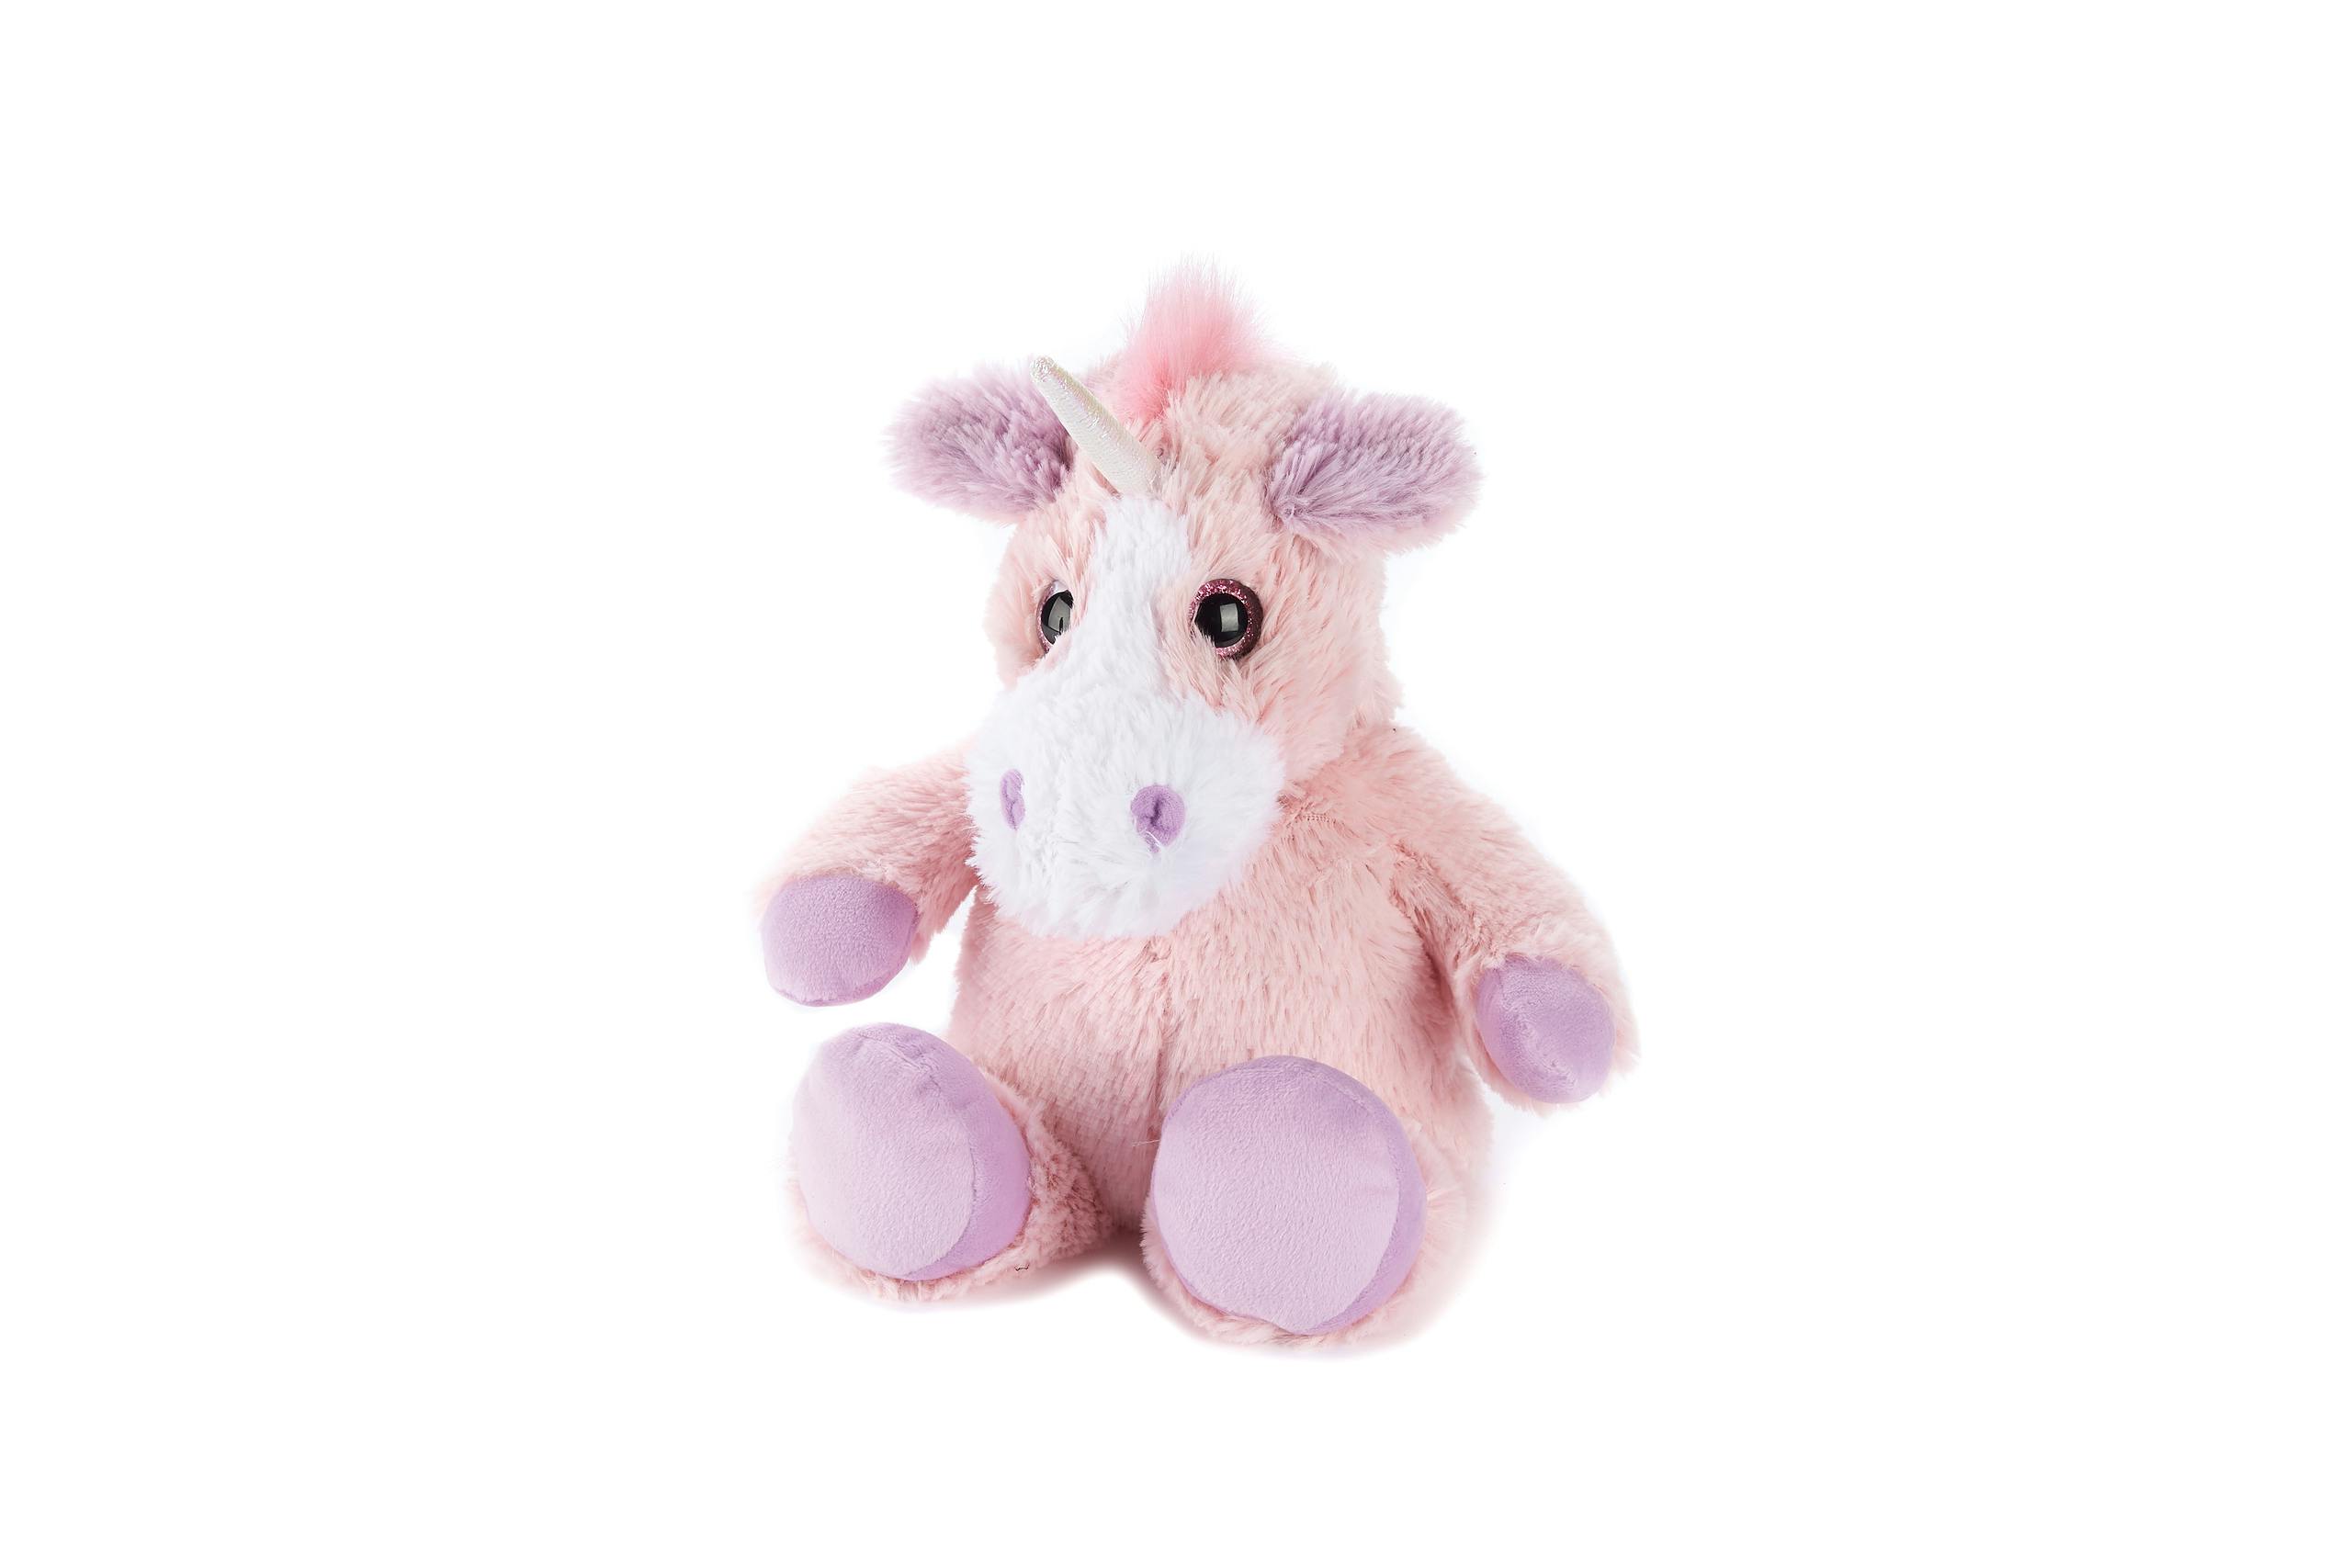 Magnetronknuffel Pink Unicorn Persoonlijk Kacheltje